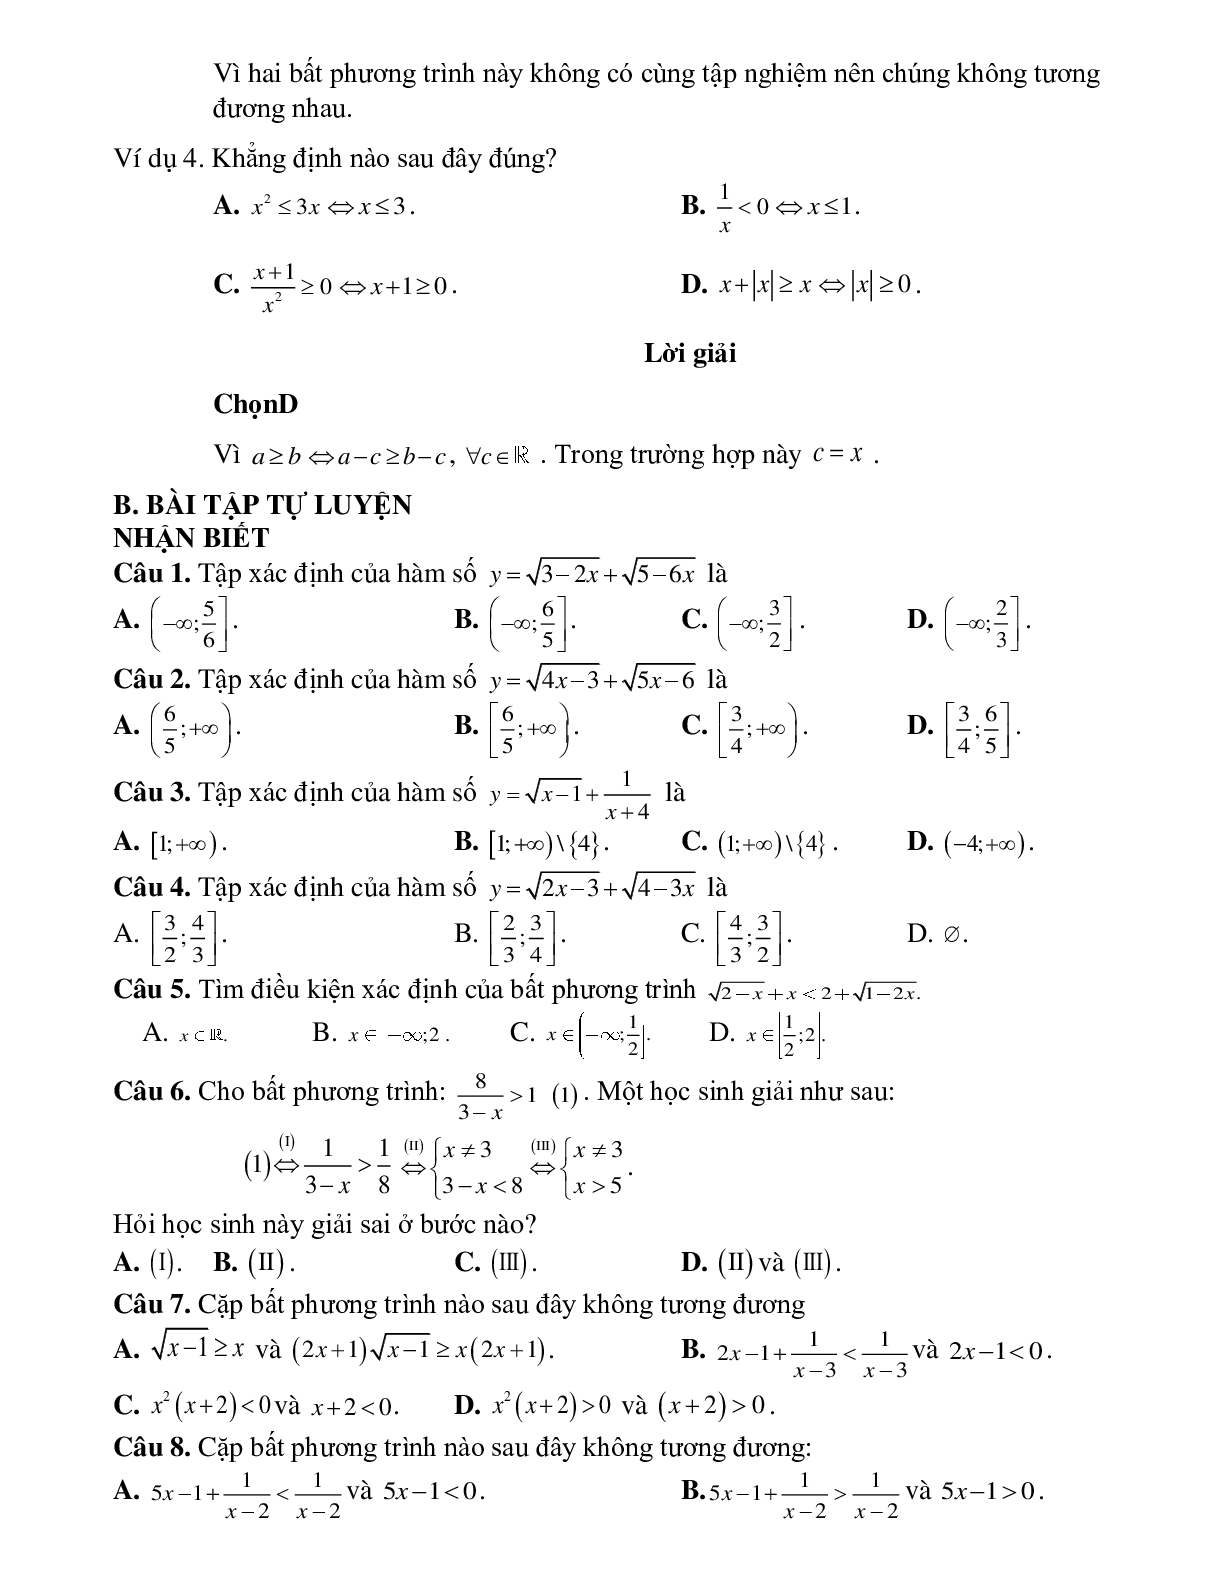 Bài tập điều kiện xác định của bất phương trình và cặp bất phương trình tương đương Toán 10 (trang 2)